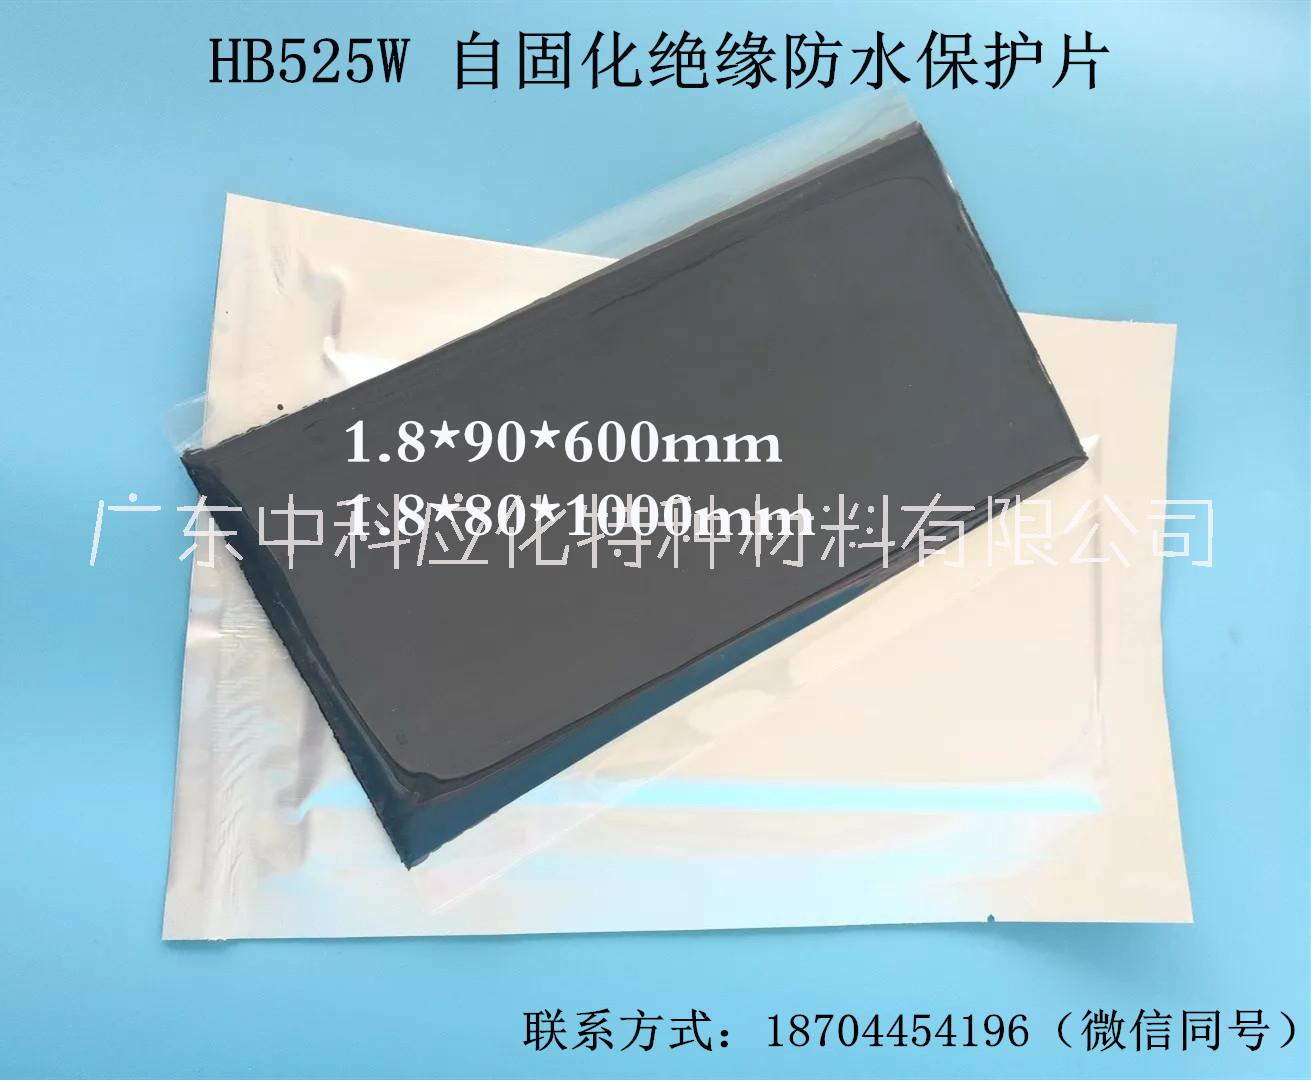 中科应化HB525W自固化绝缘防水保护片主要用于带电裸导体（裸导线、裸母排、异形导体）的绝缘密封防护。图片